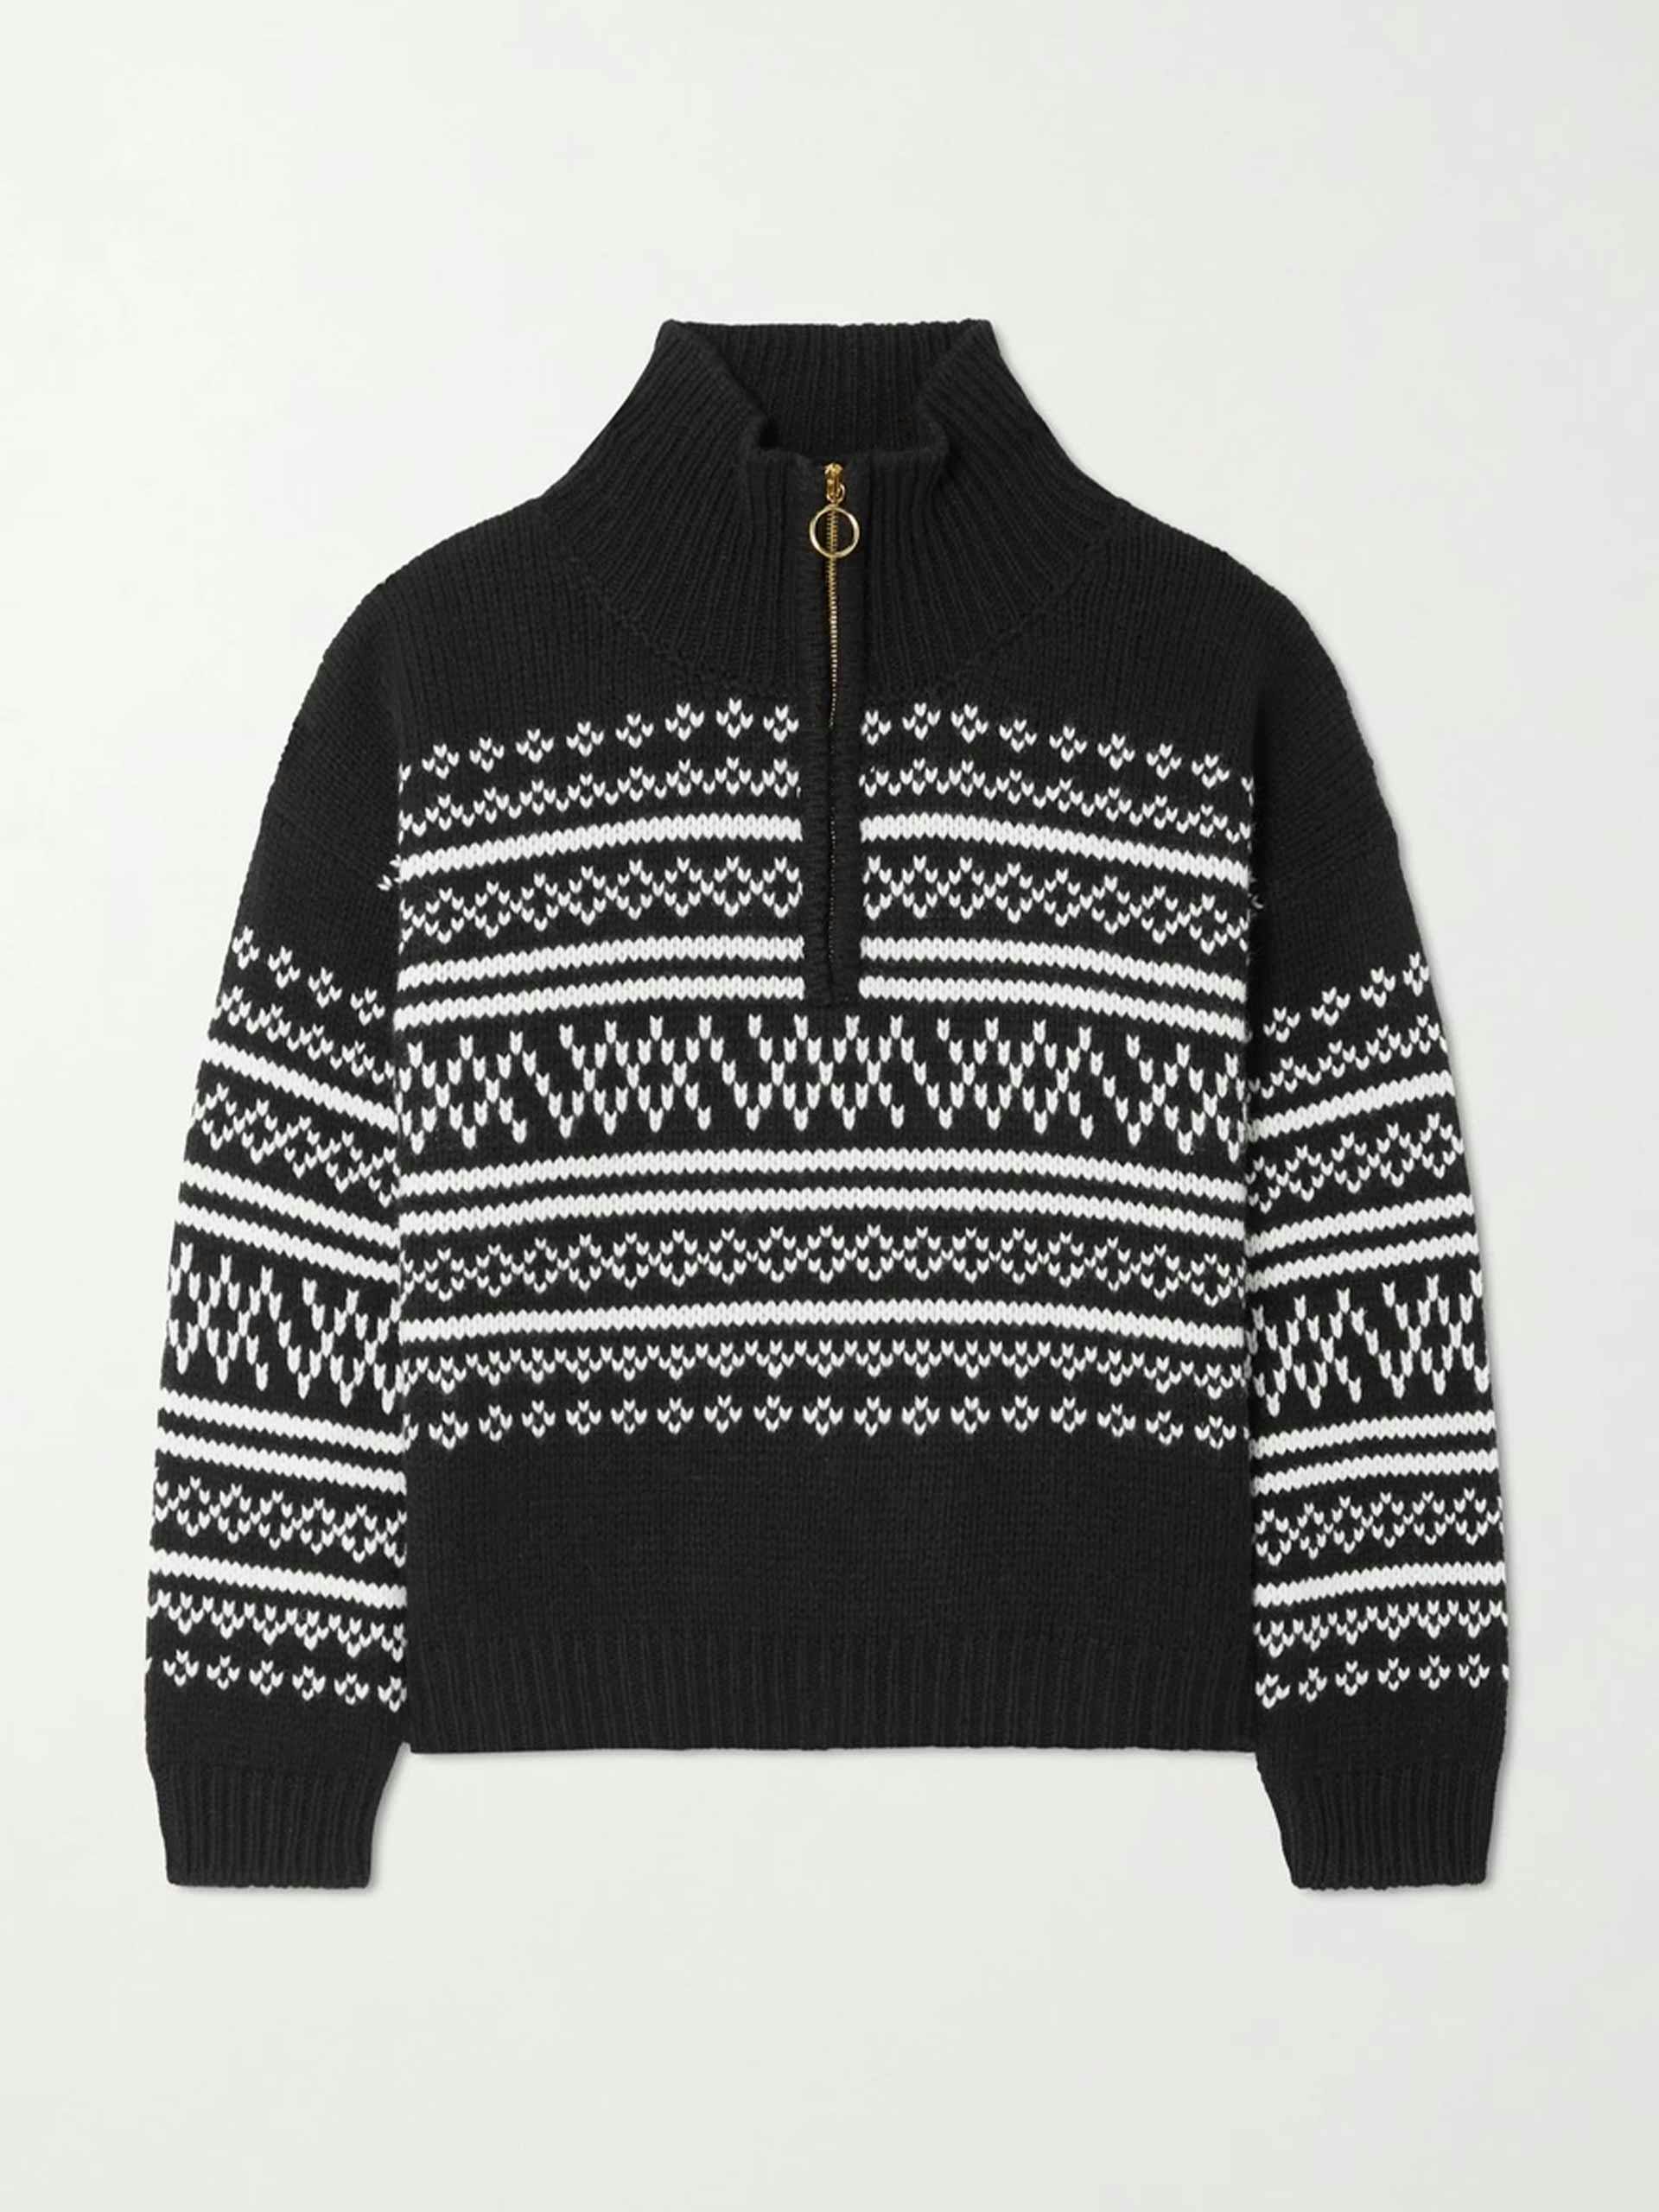 Merino wool cashmere sweater